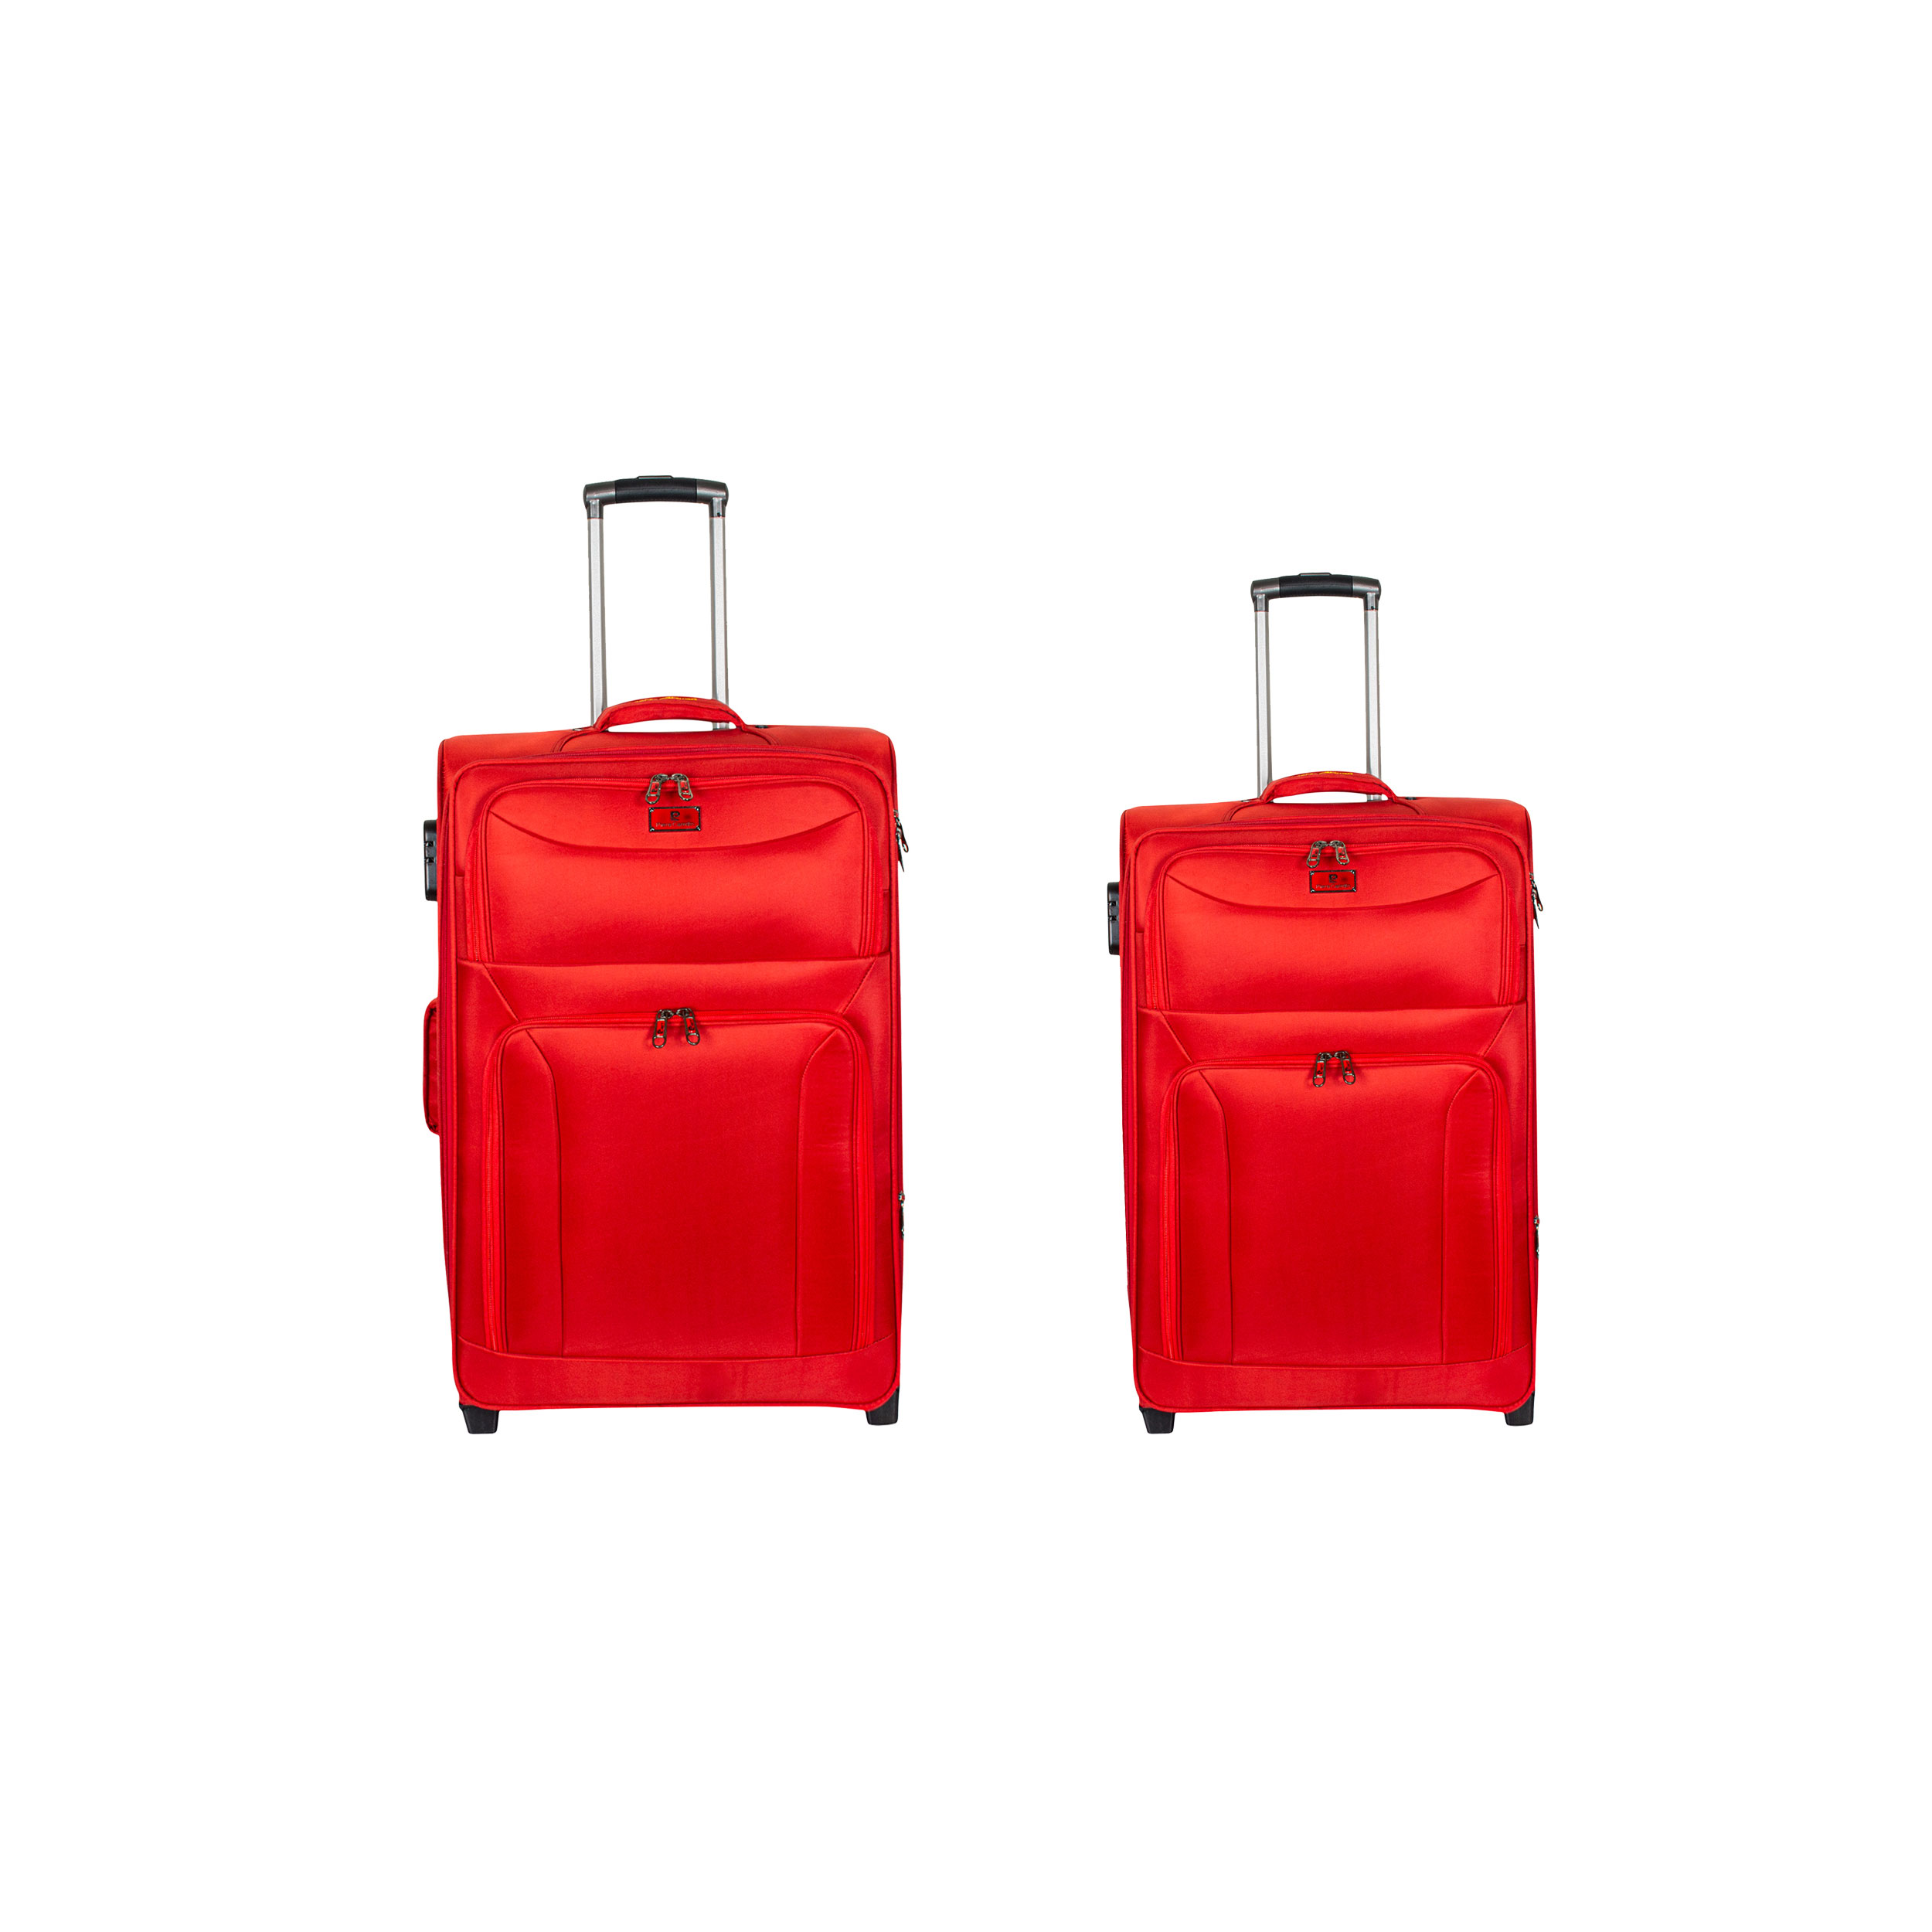  مجموعه دو عددی چمدان پیر کاردین مدل DY-5050G کد M-K